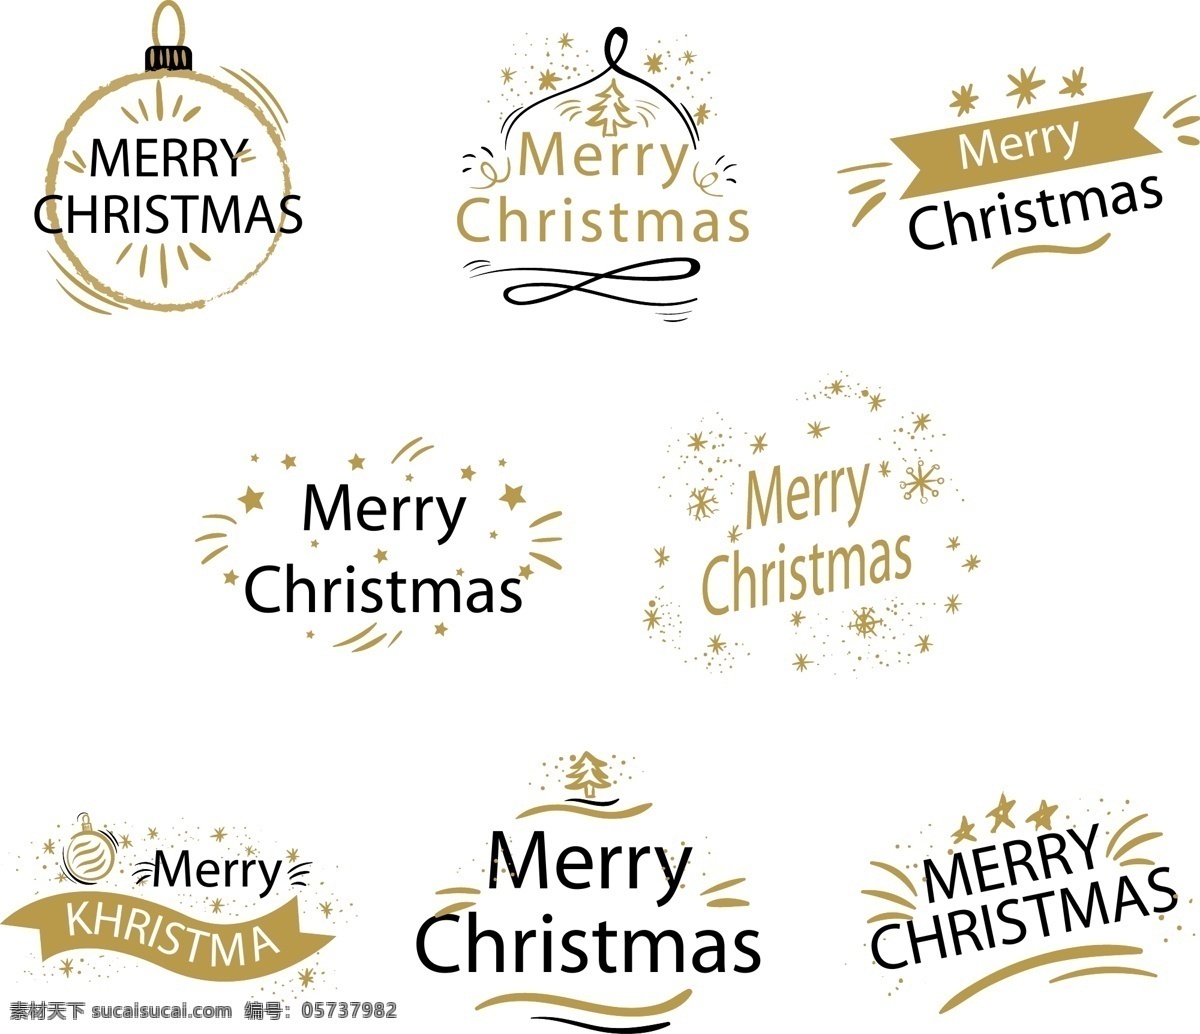 创意 英文 圣诞节 标签 雪花 矢量素材 欧美风 圣诞树